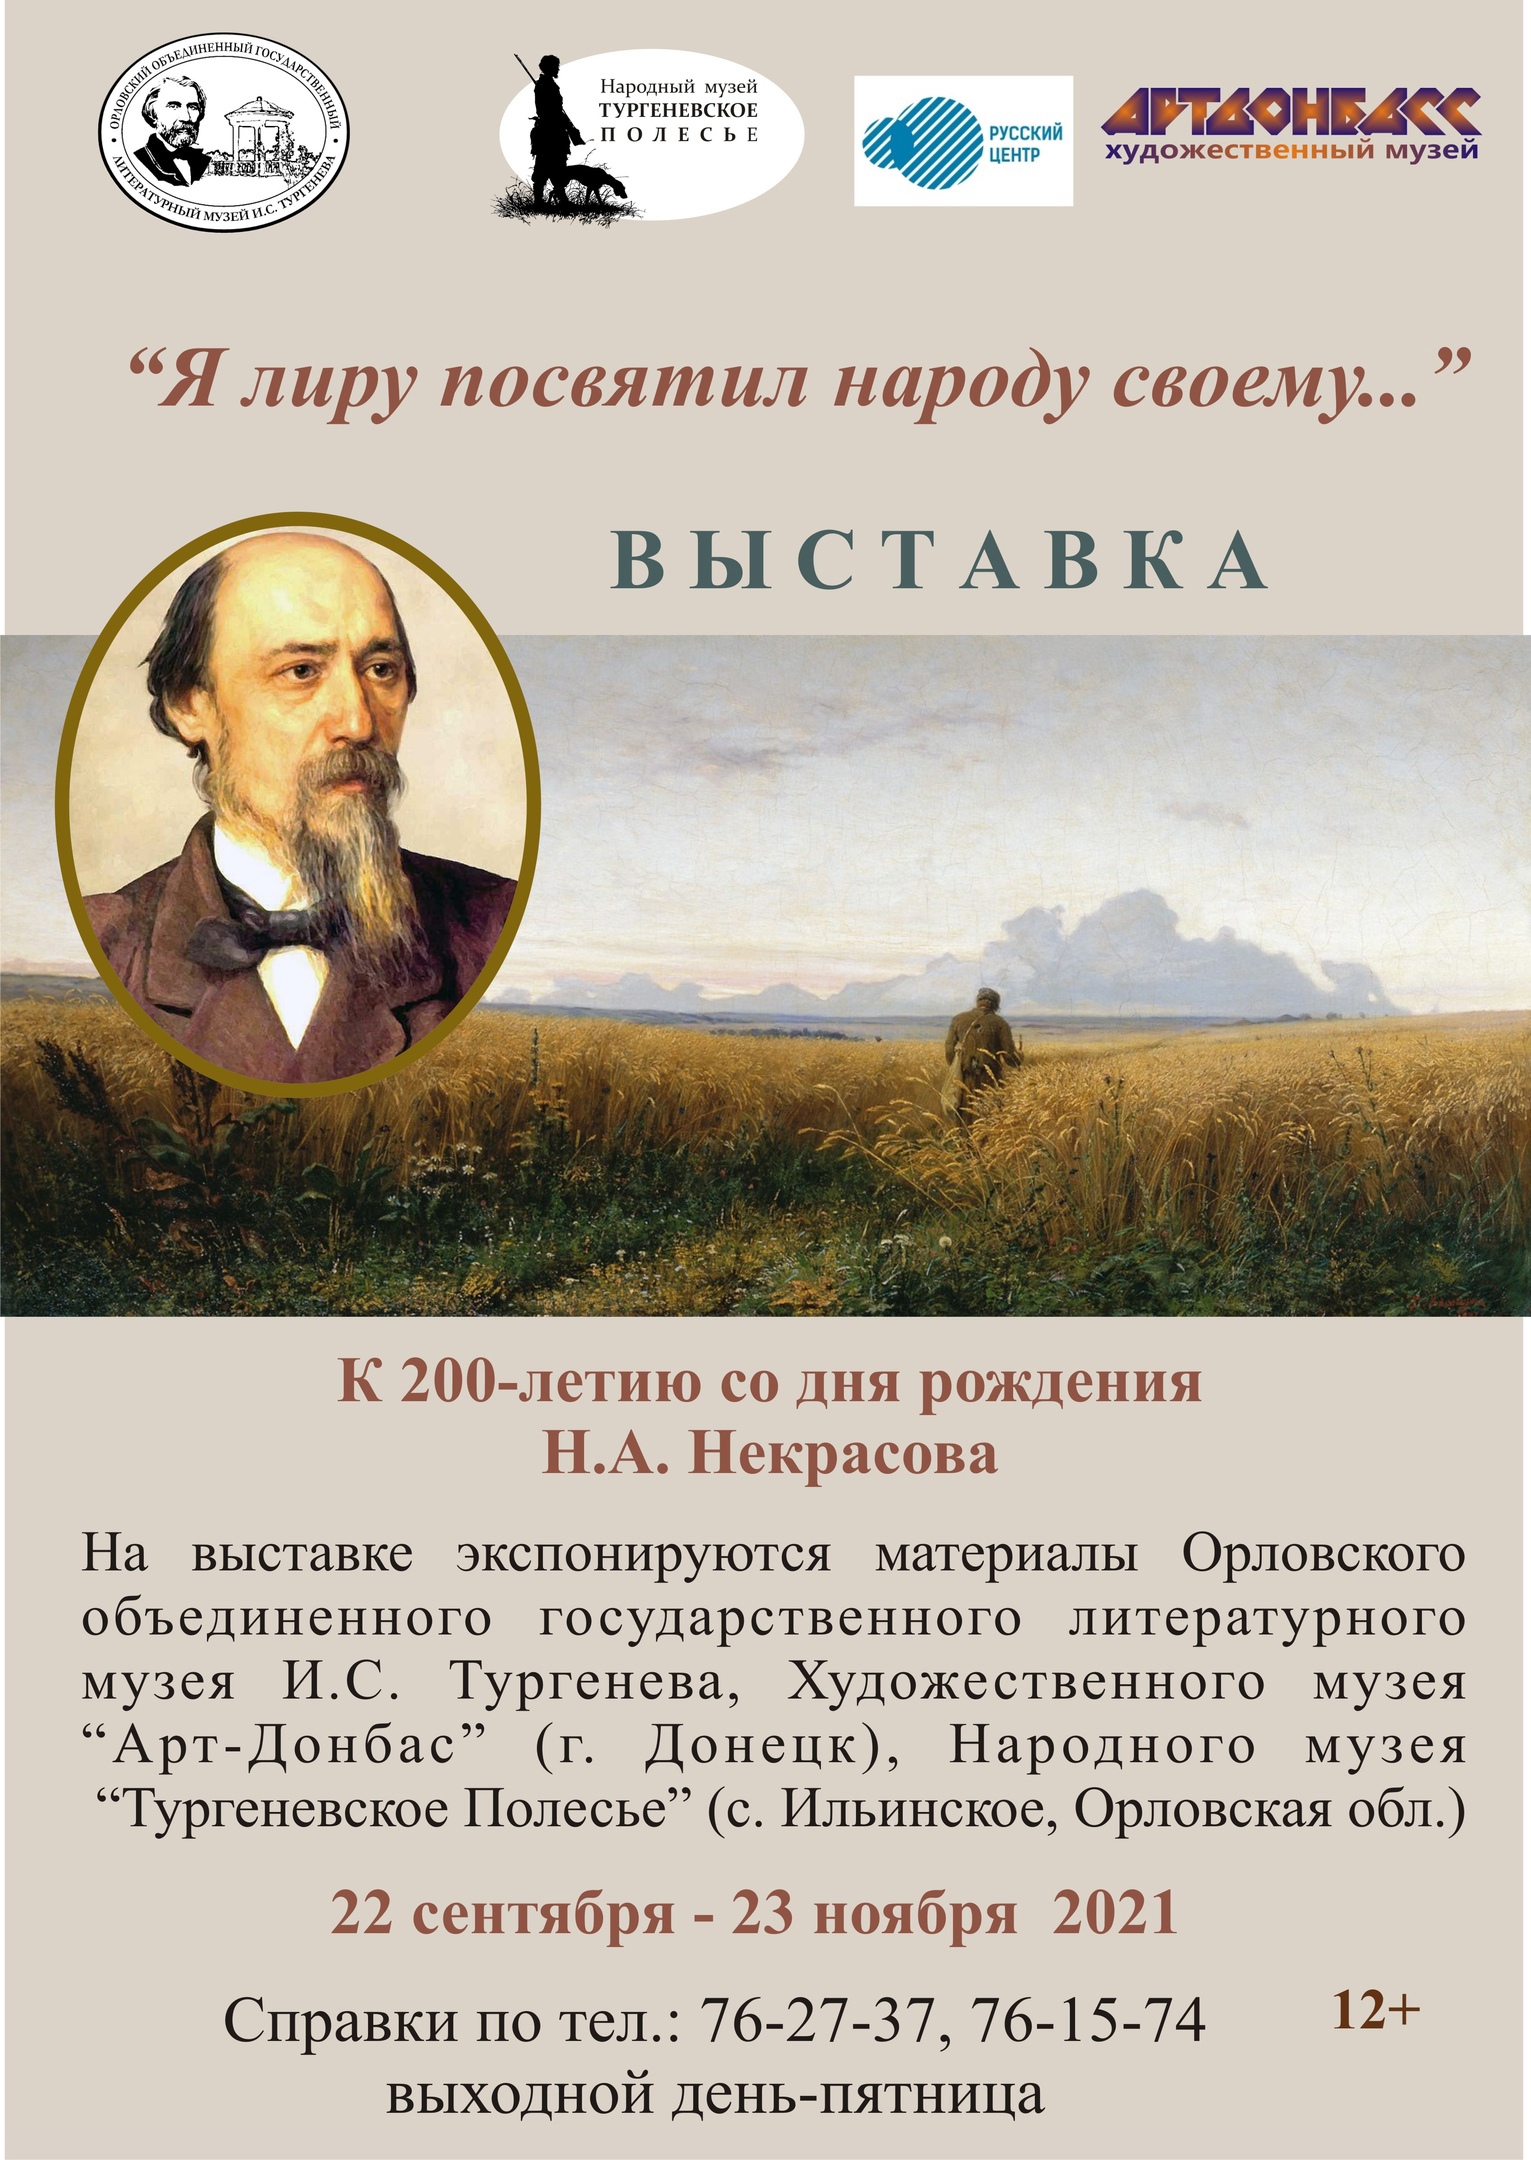 Выставка, посвящённая 200-летию со дня рождения Н.А. Некрасова